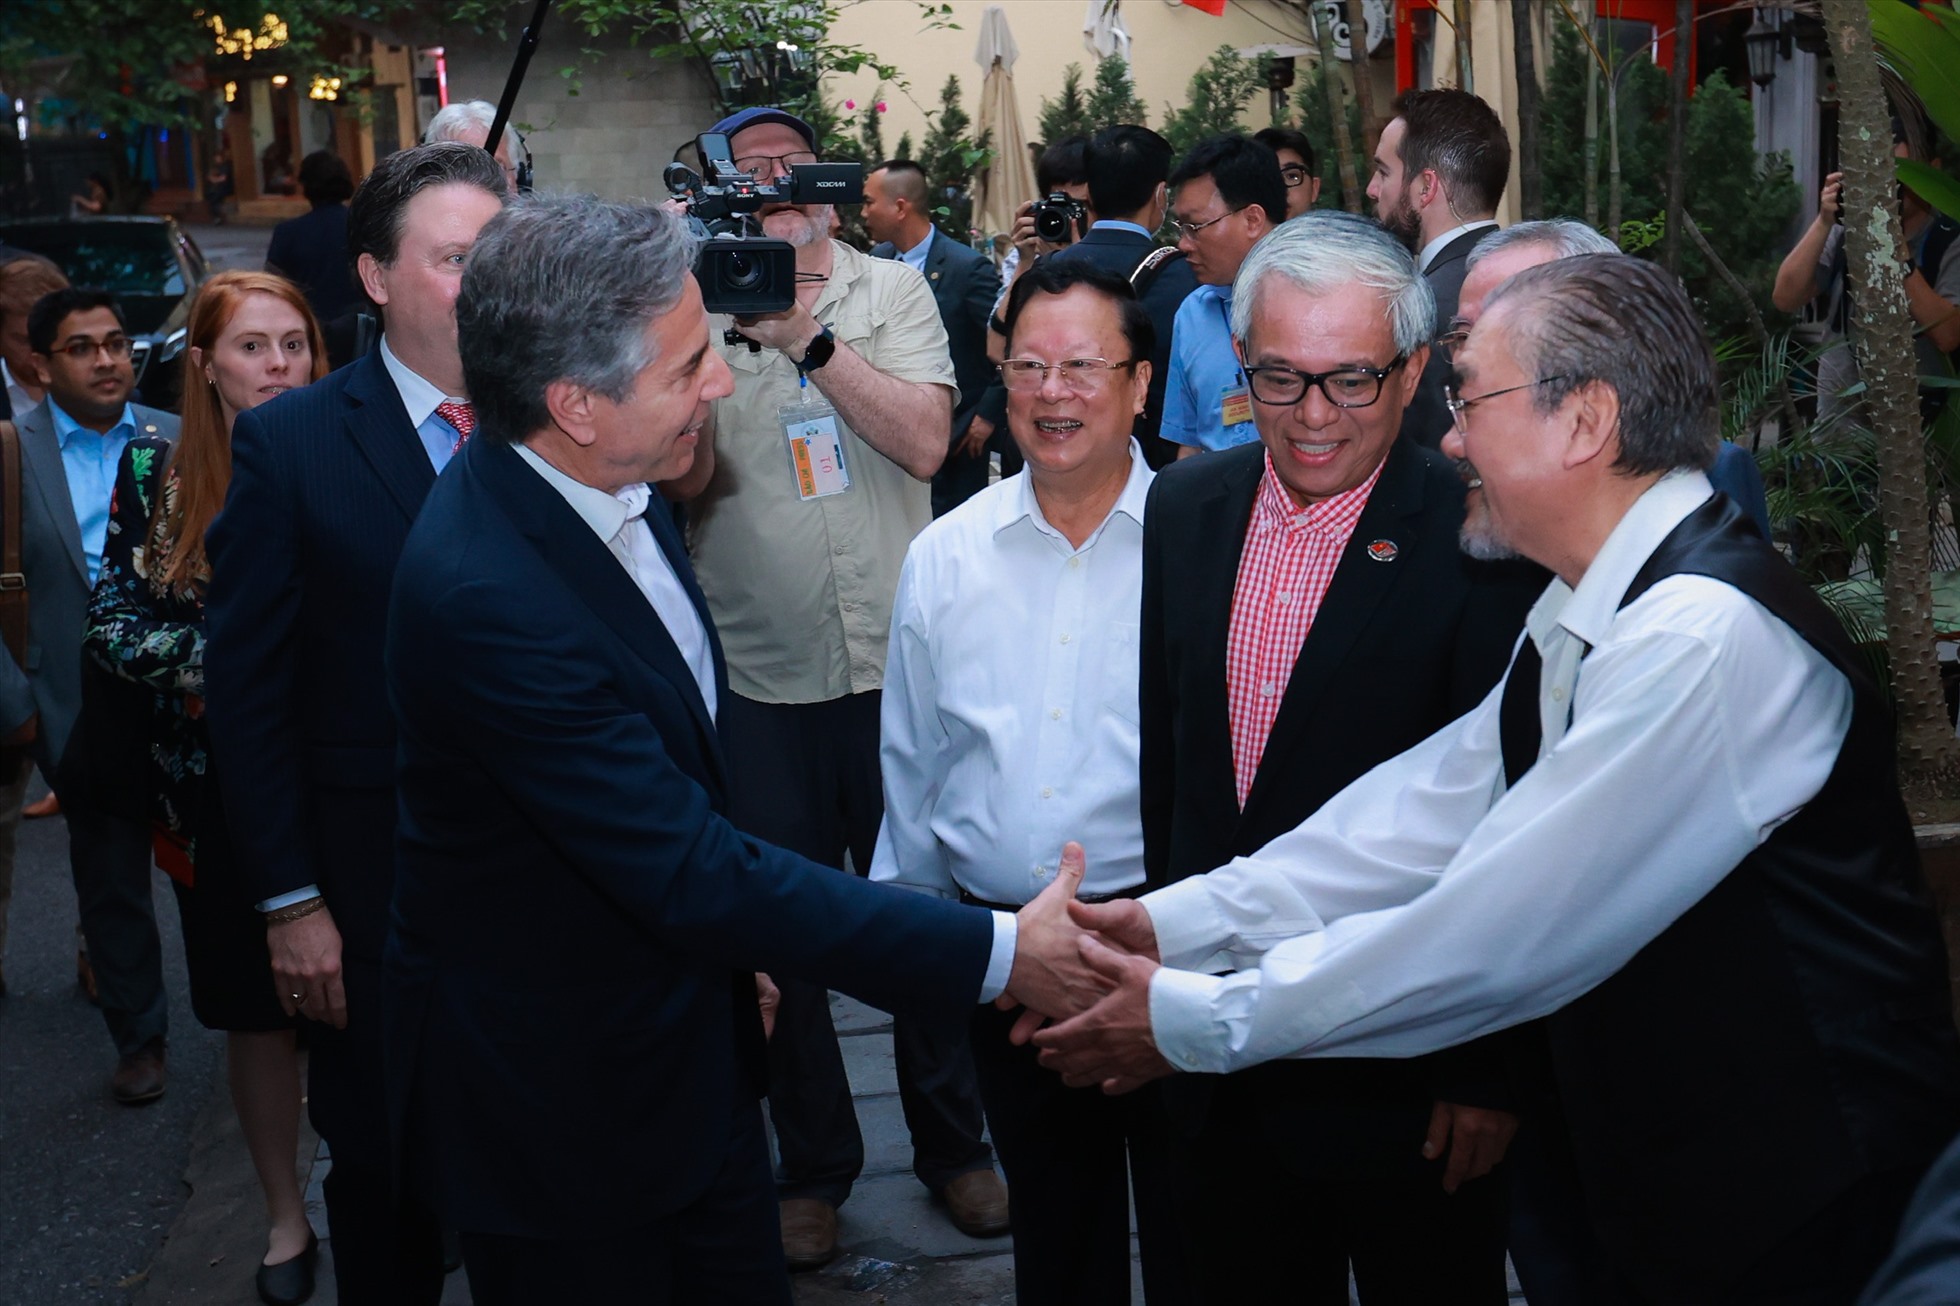 Đây là một trong những hoạt động của người đứng đầu Bộ Ngoại giao Mỹ trong khuôn khổ chuyến thăm Việt Nam từ 14-16.4. Ảnh: Hải Nguyễn